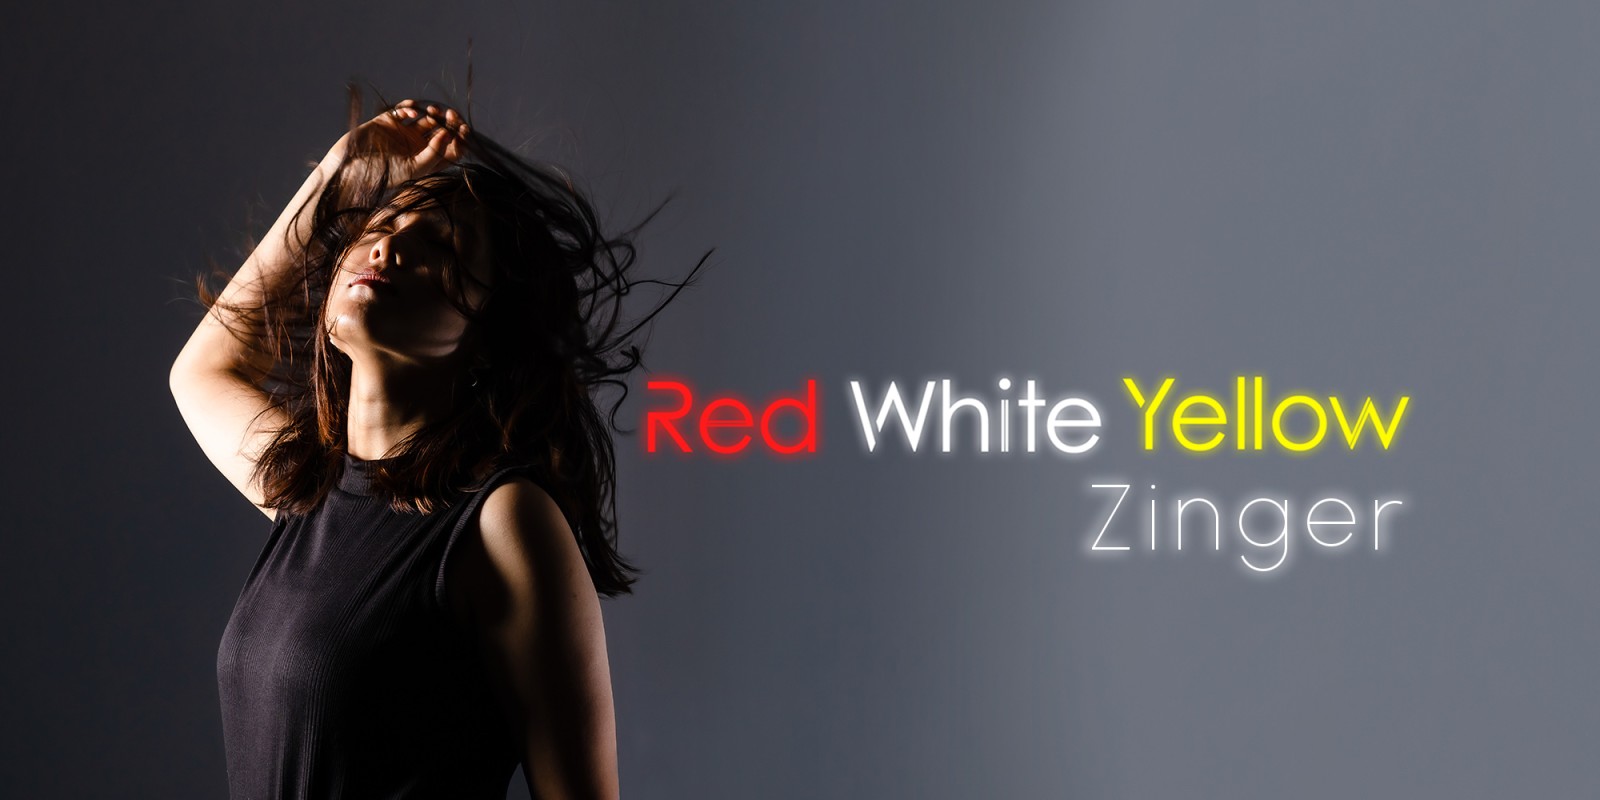 Red White Yellow Zinger